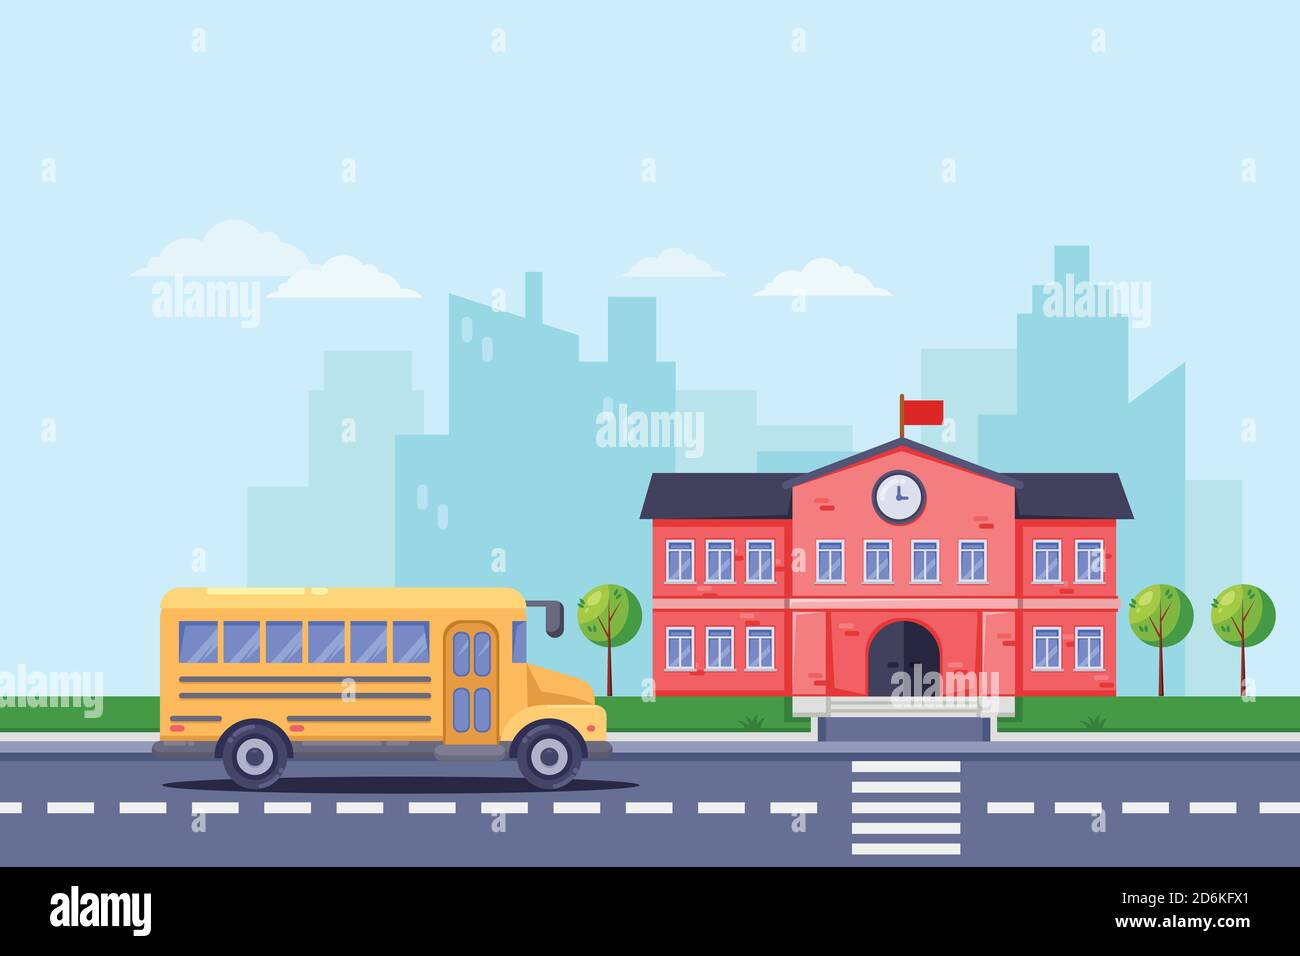 Zurück in die Schule, Vektor-flache Illustration. Schulgebäude und gelber Bus auf der Straße. Bildungshintergrund. Stock Vektor